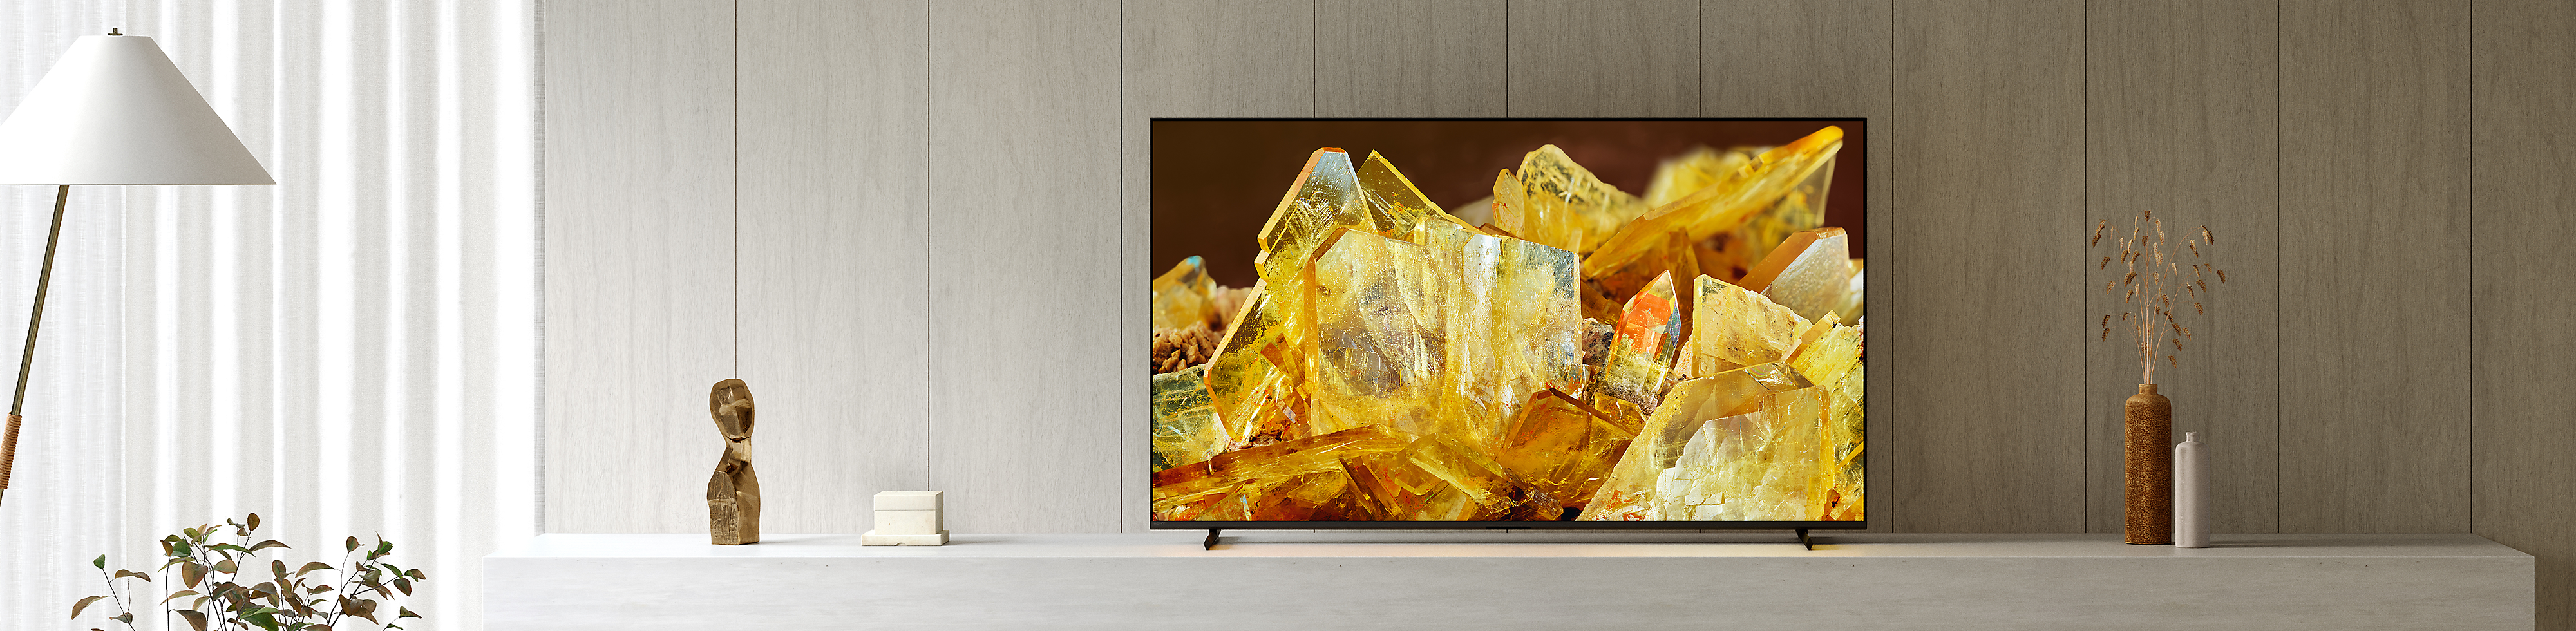 Telewizor BRAVIA XR w domowym salonie, z wyświetlonym na ekranie zbliżeniem kryształów w kolorze bursztynu